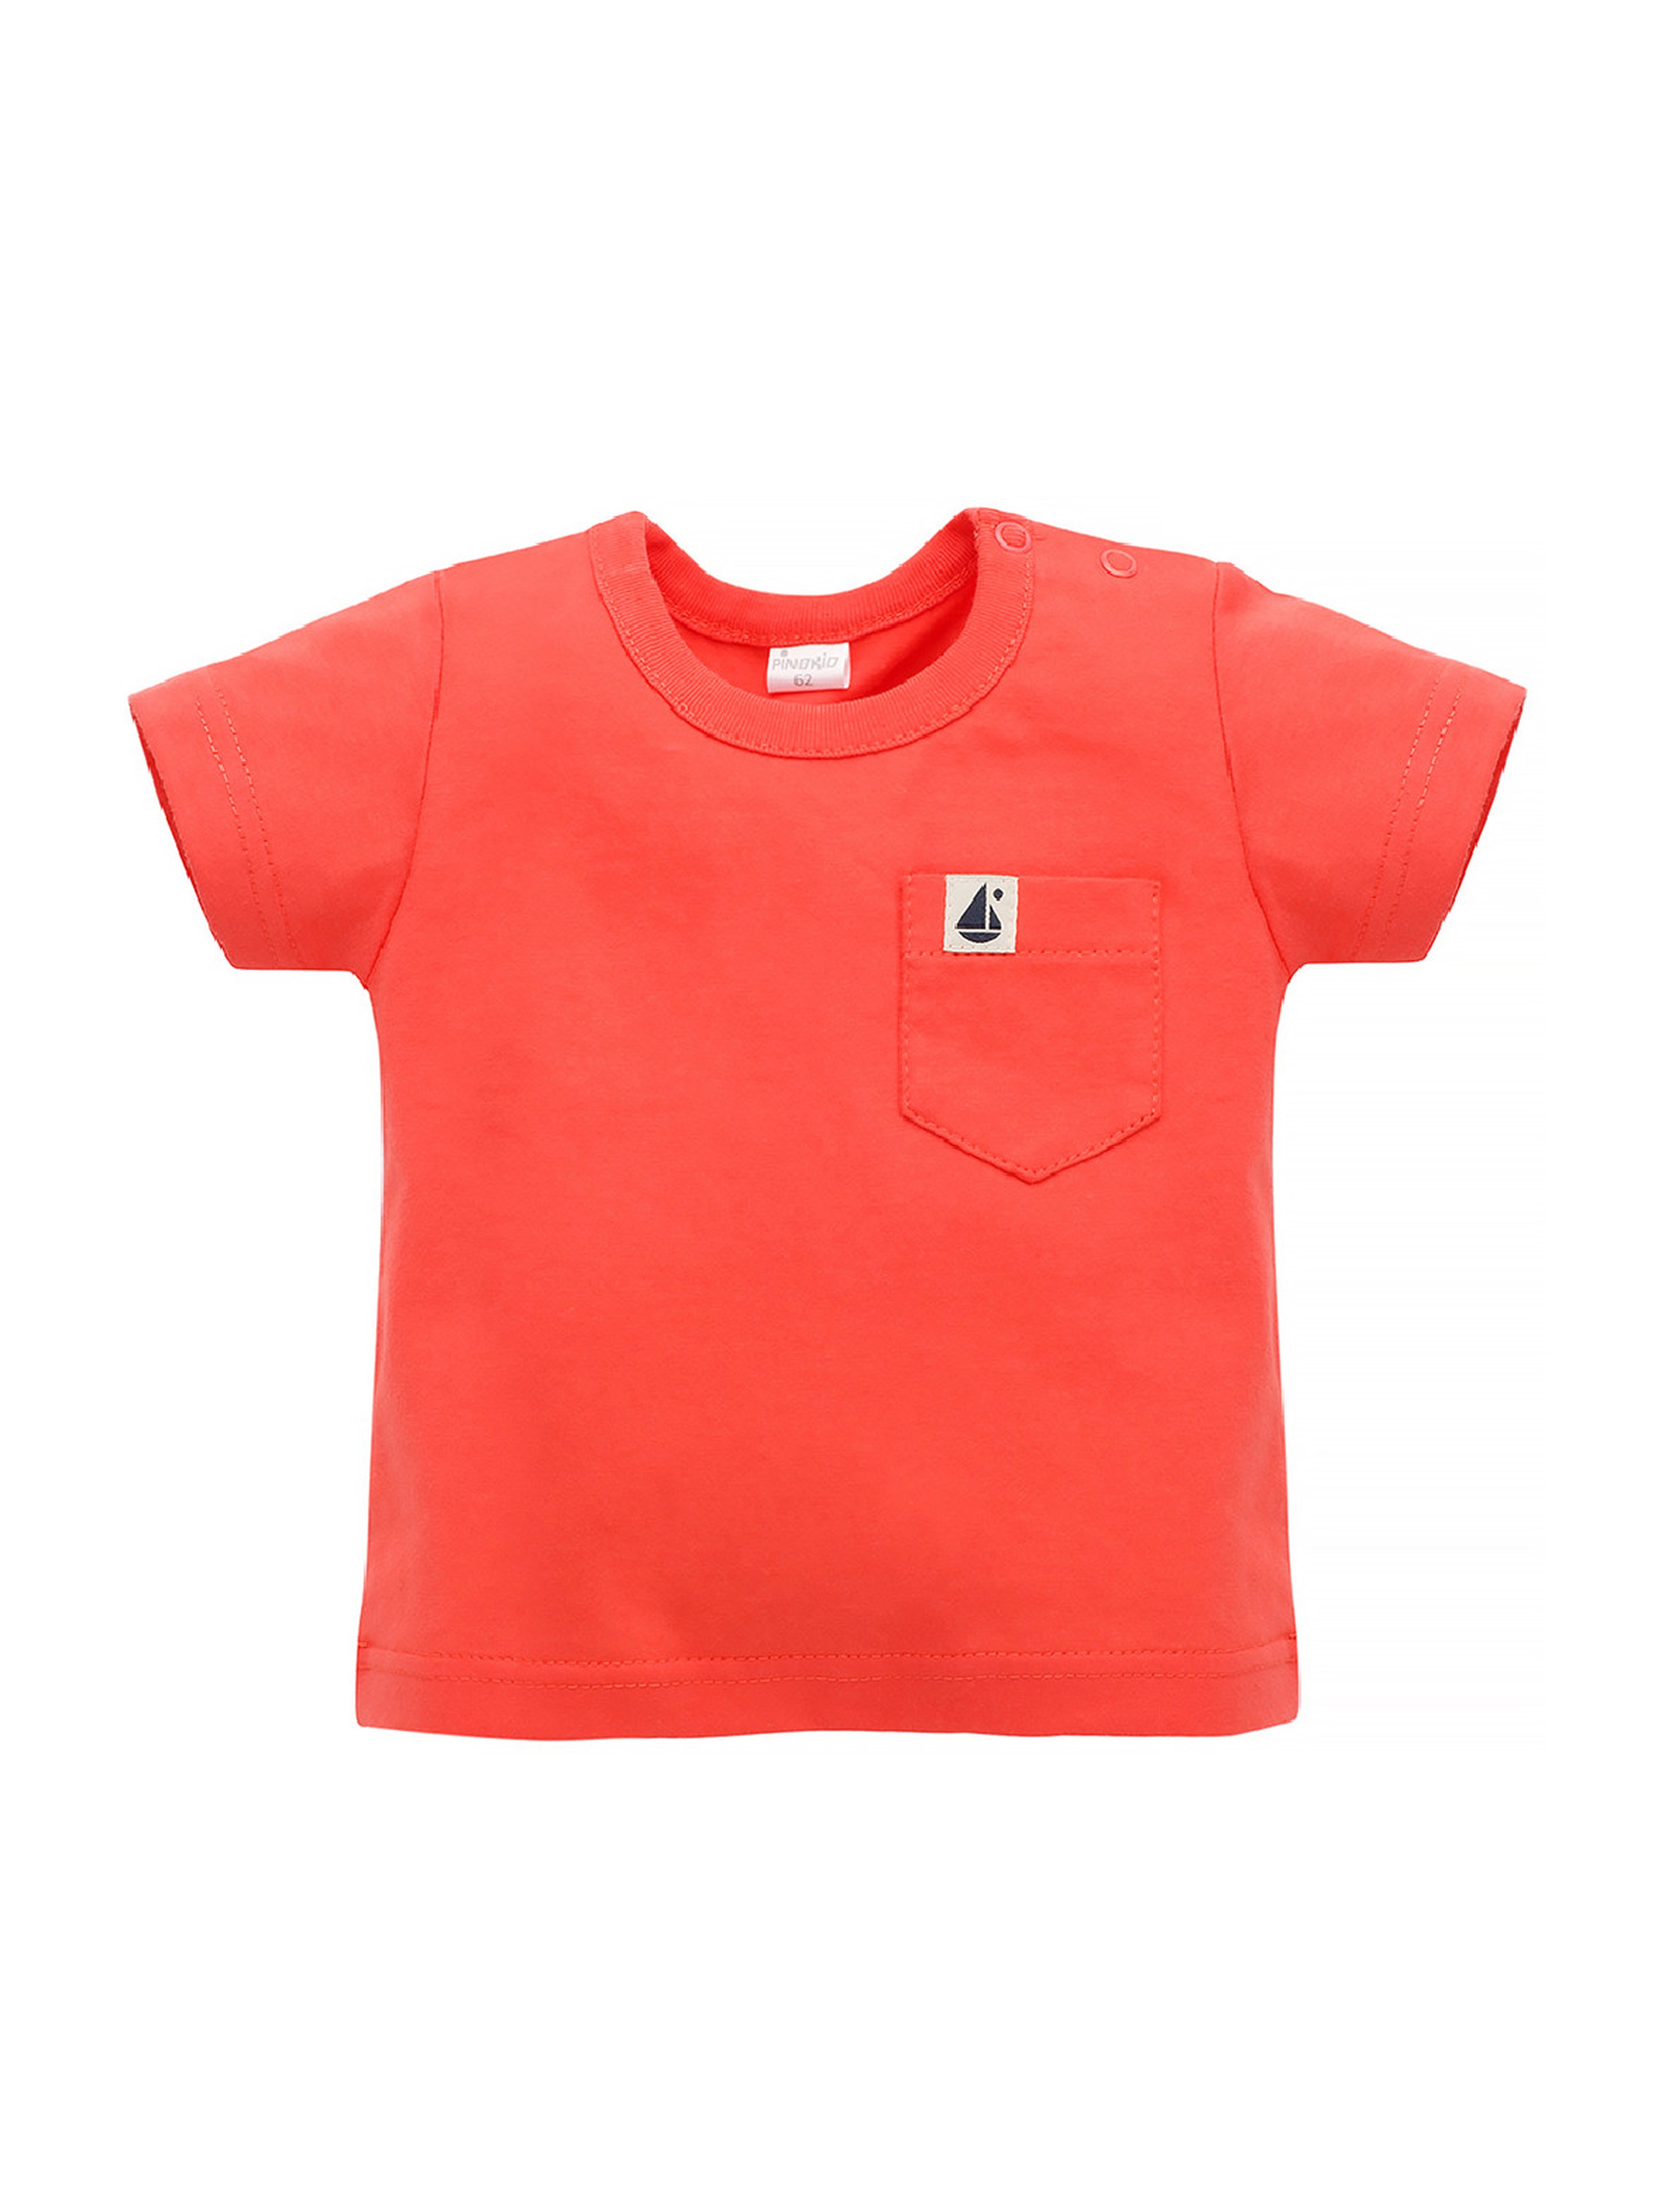 Bawełniany t-shirt dla chłopca Sailor czerwony